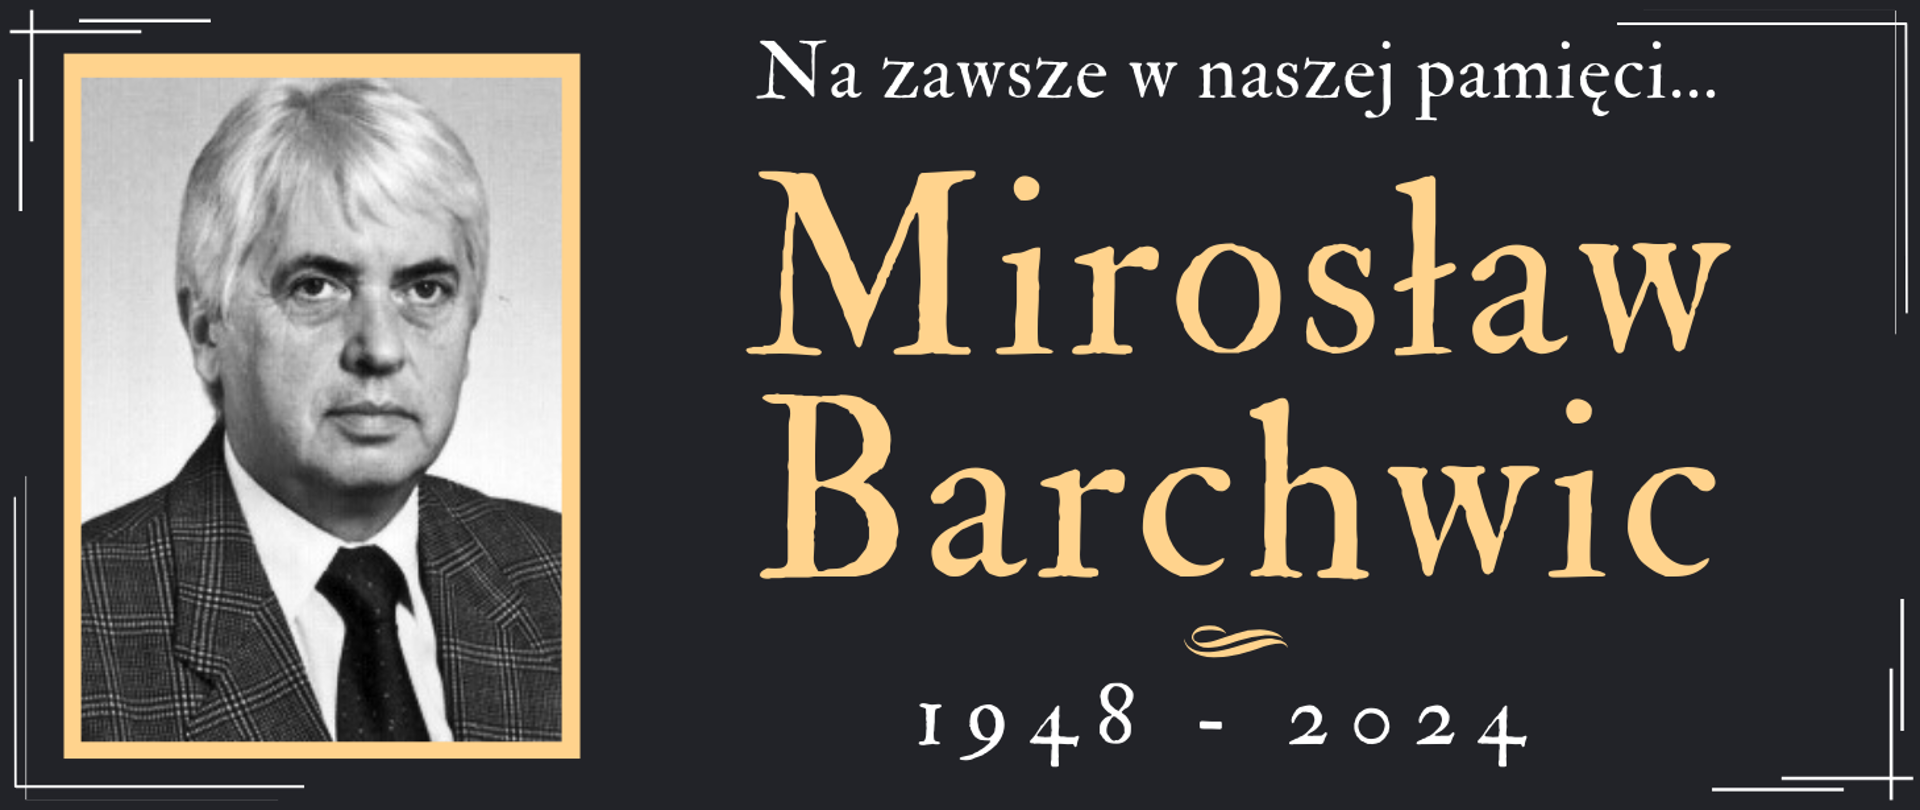 czarne tło z wizerunkiem człowieka w ramce oraz informacja o śmierci Mirosława Barchwica